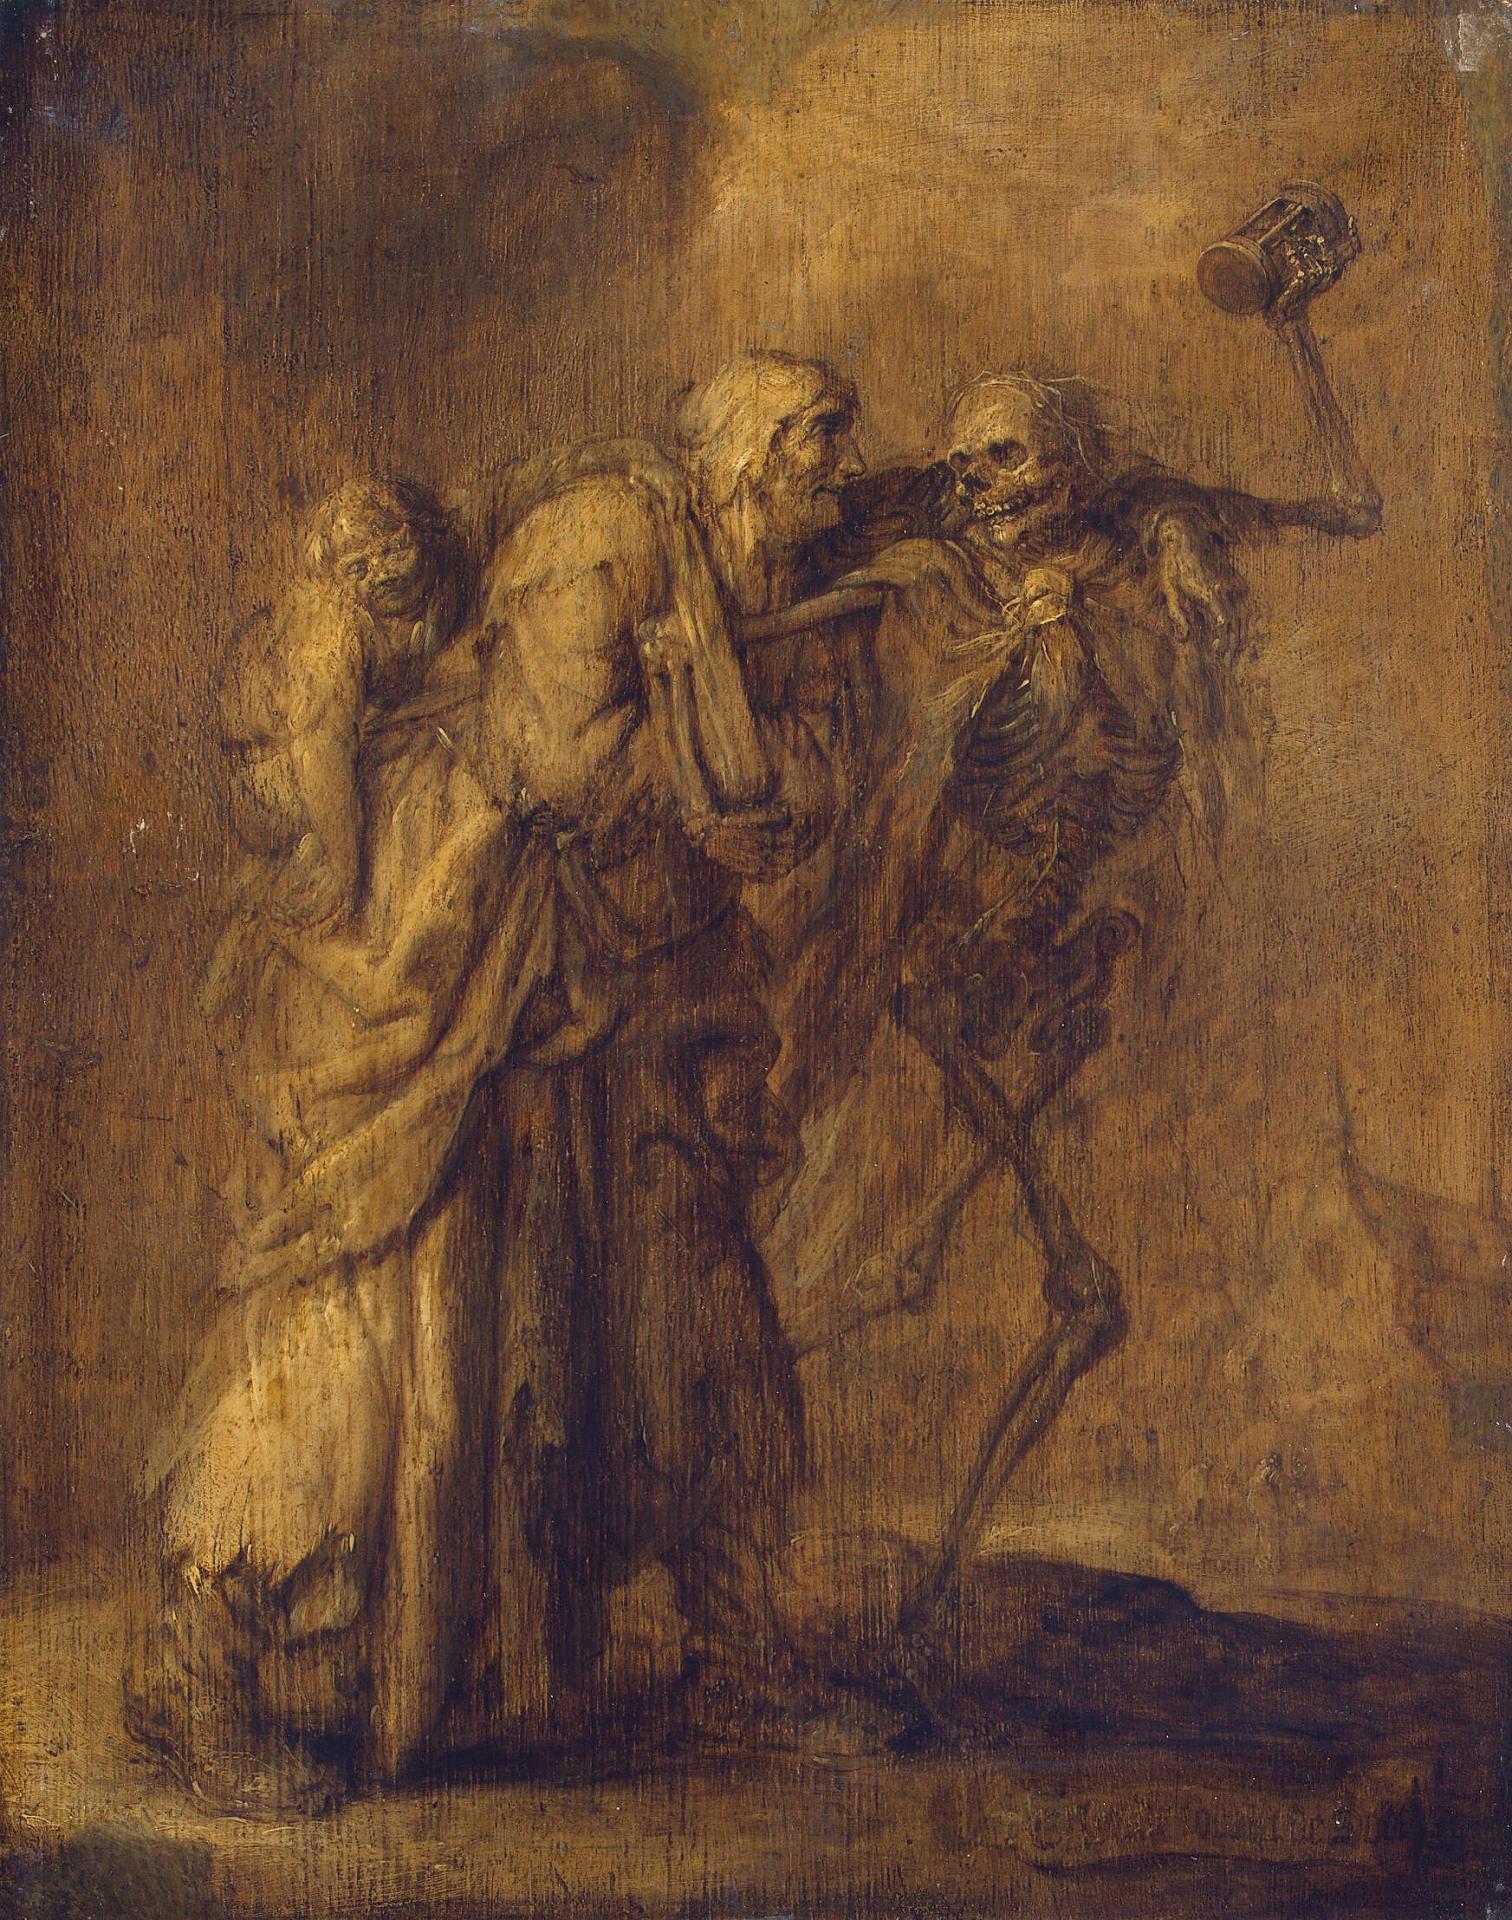 Адриан Питерс ван де Венне. "Нищета ищет смерти" ("Ellend soeckt de Dood"). 1630-1640. Эрмитаж, Санкт-Петербург.